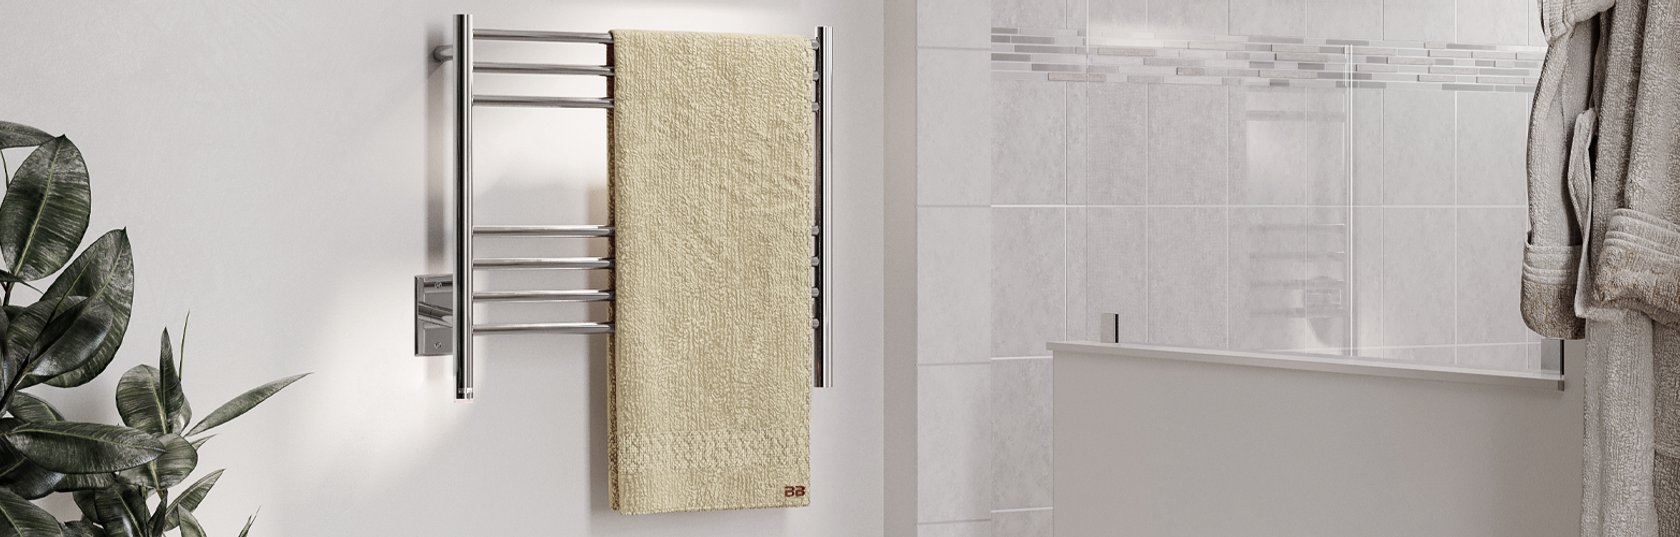 Where should I place my heated towel rail?